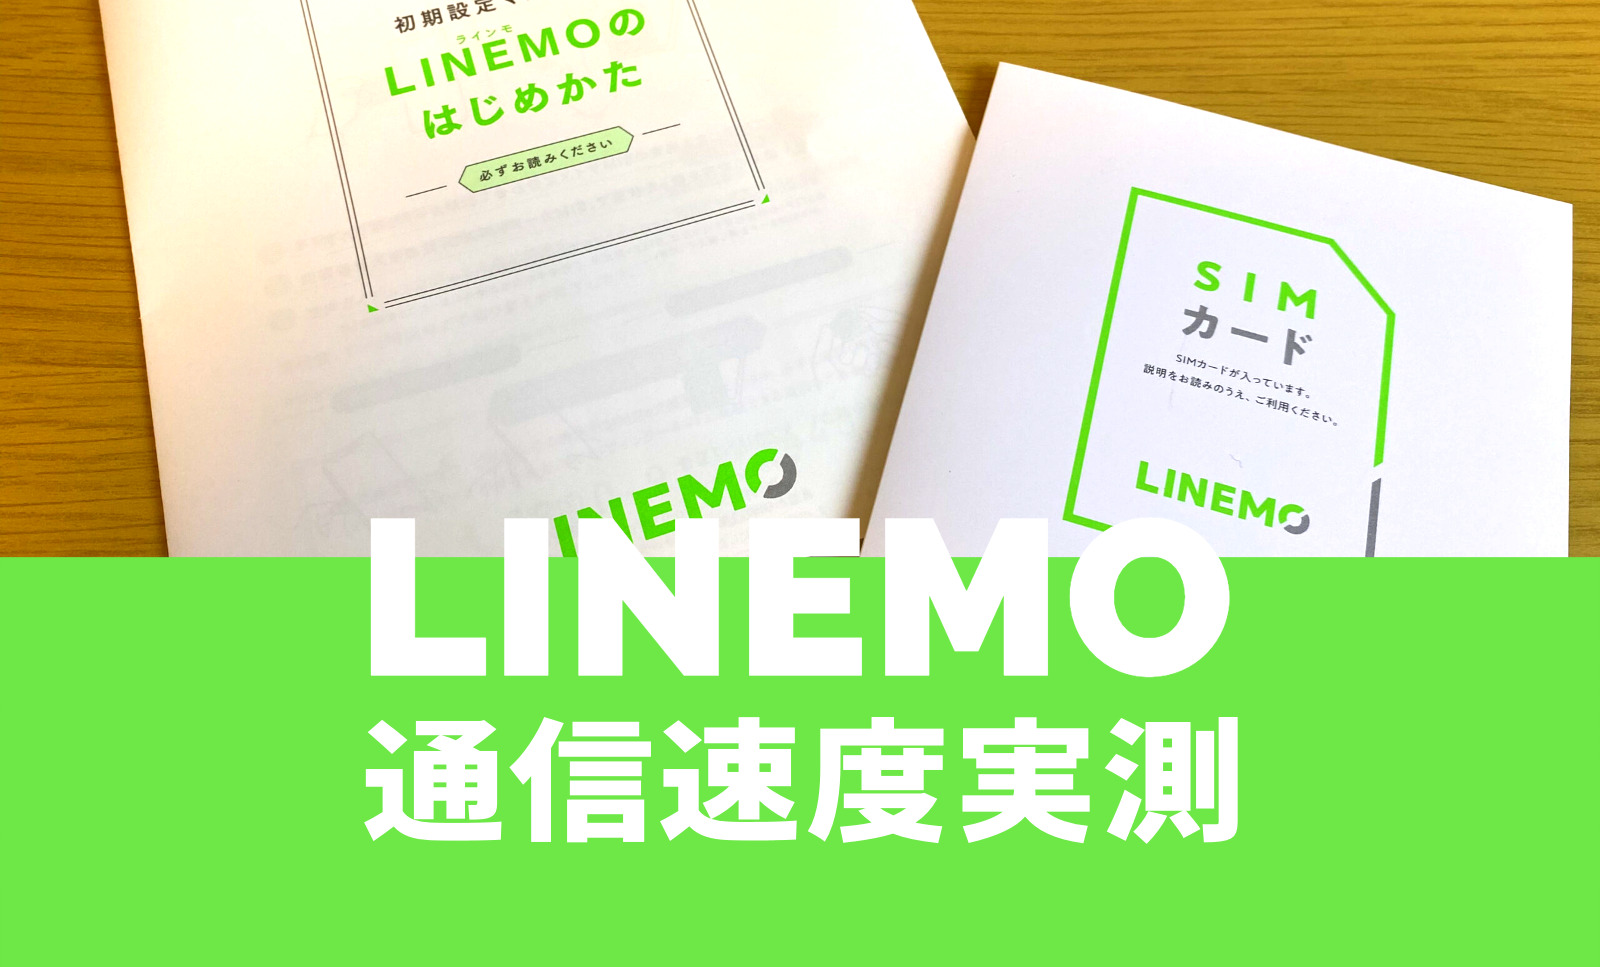 LINEMOの通信速度の記事のサムネイル画像